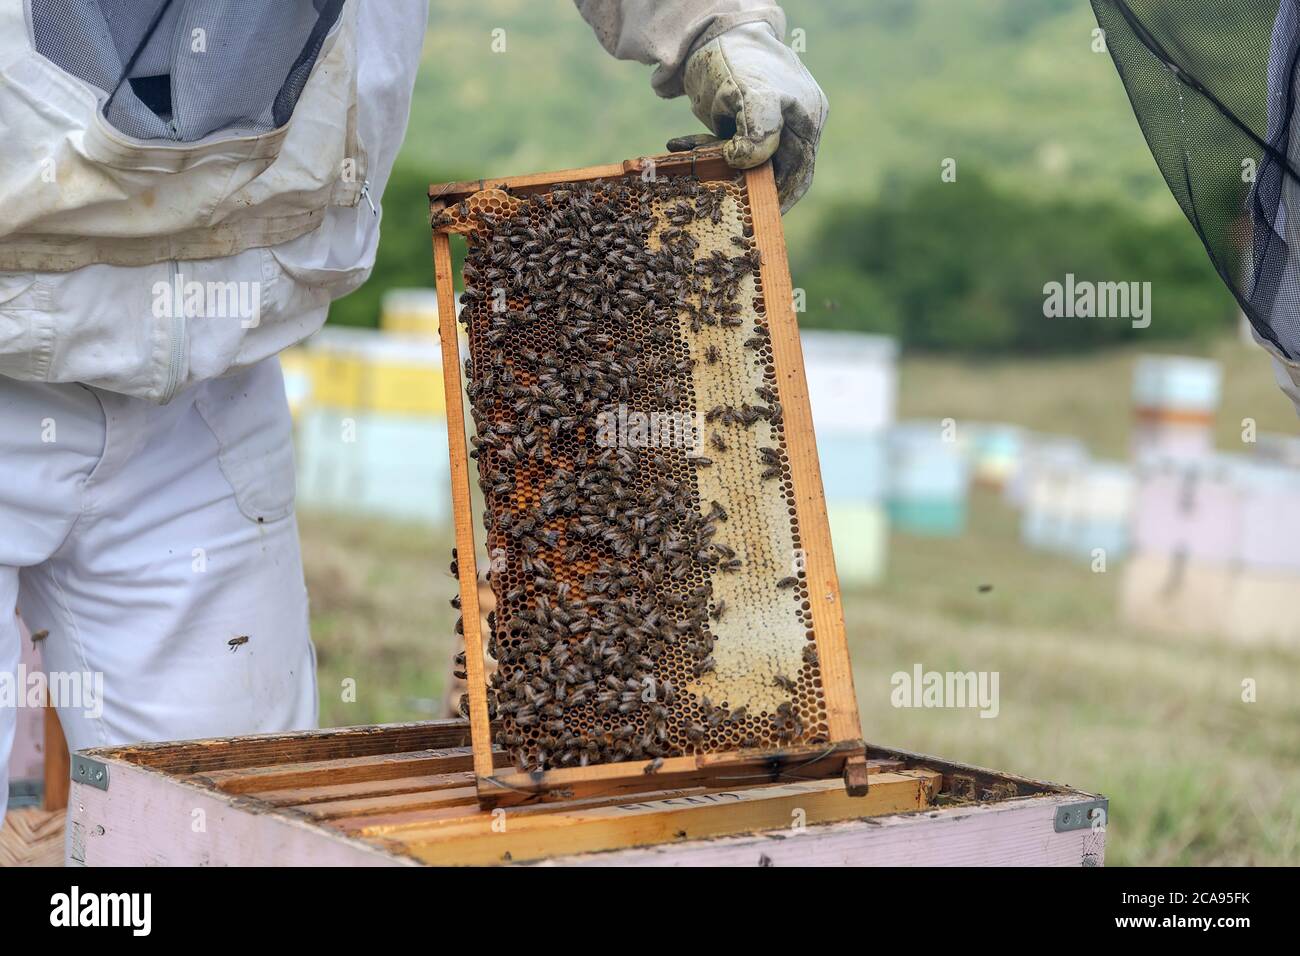 apiculteur tenant un nid d'abeilles plein d'abeilles. Apiculteur inspectant le cadre en nid d'abeille à l'emplacement. Concept d'apiculture Banque D'Images